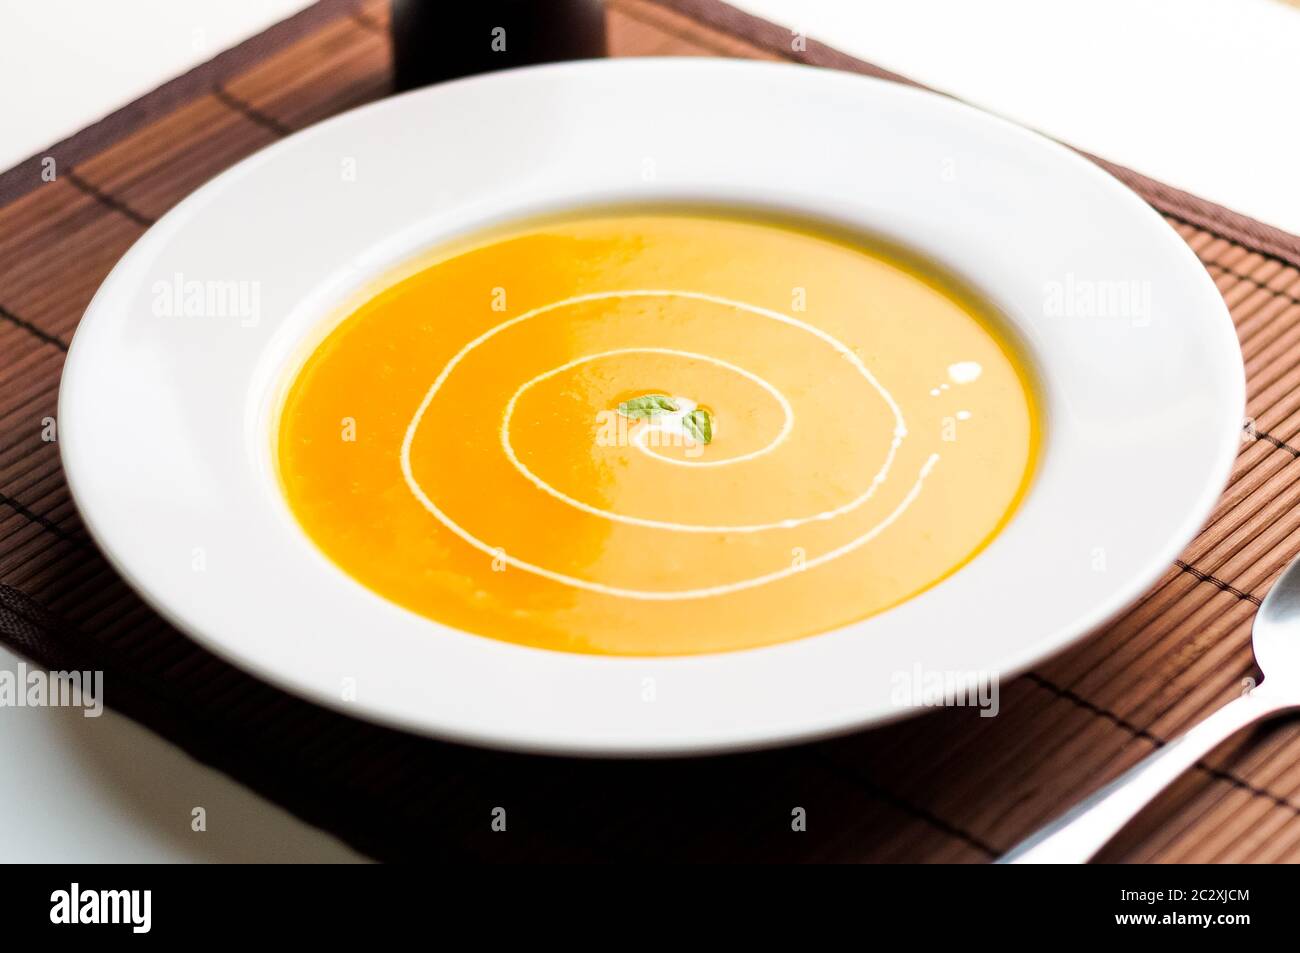 Piatto di zuppa di zucca. La zuppa di zucca viene tradizionalmente consumata durante la stagione autunnale. Zucca o zucca butternut sono mescolati con altre verdure Foto Stock